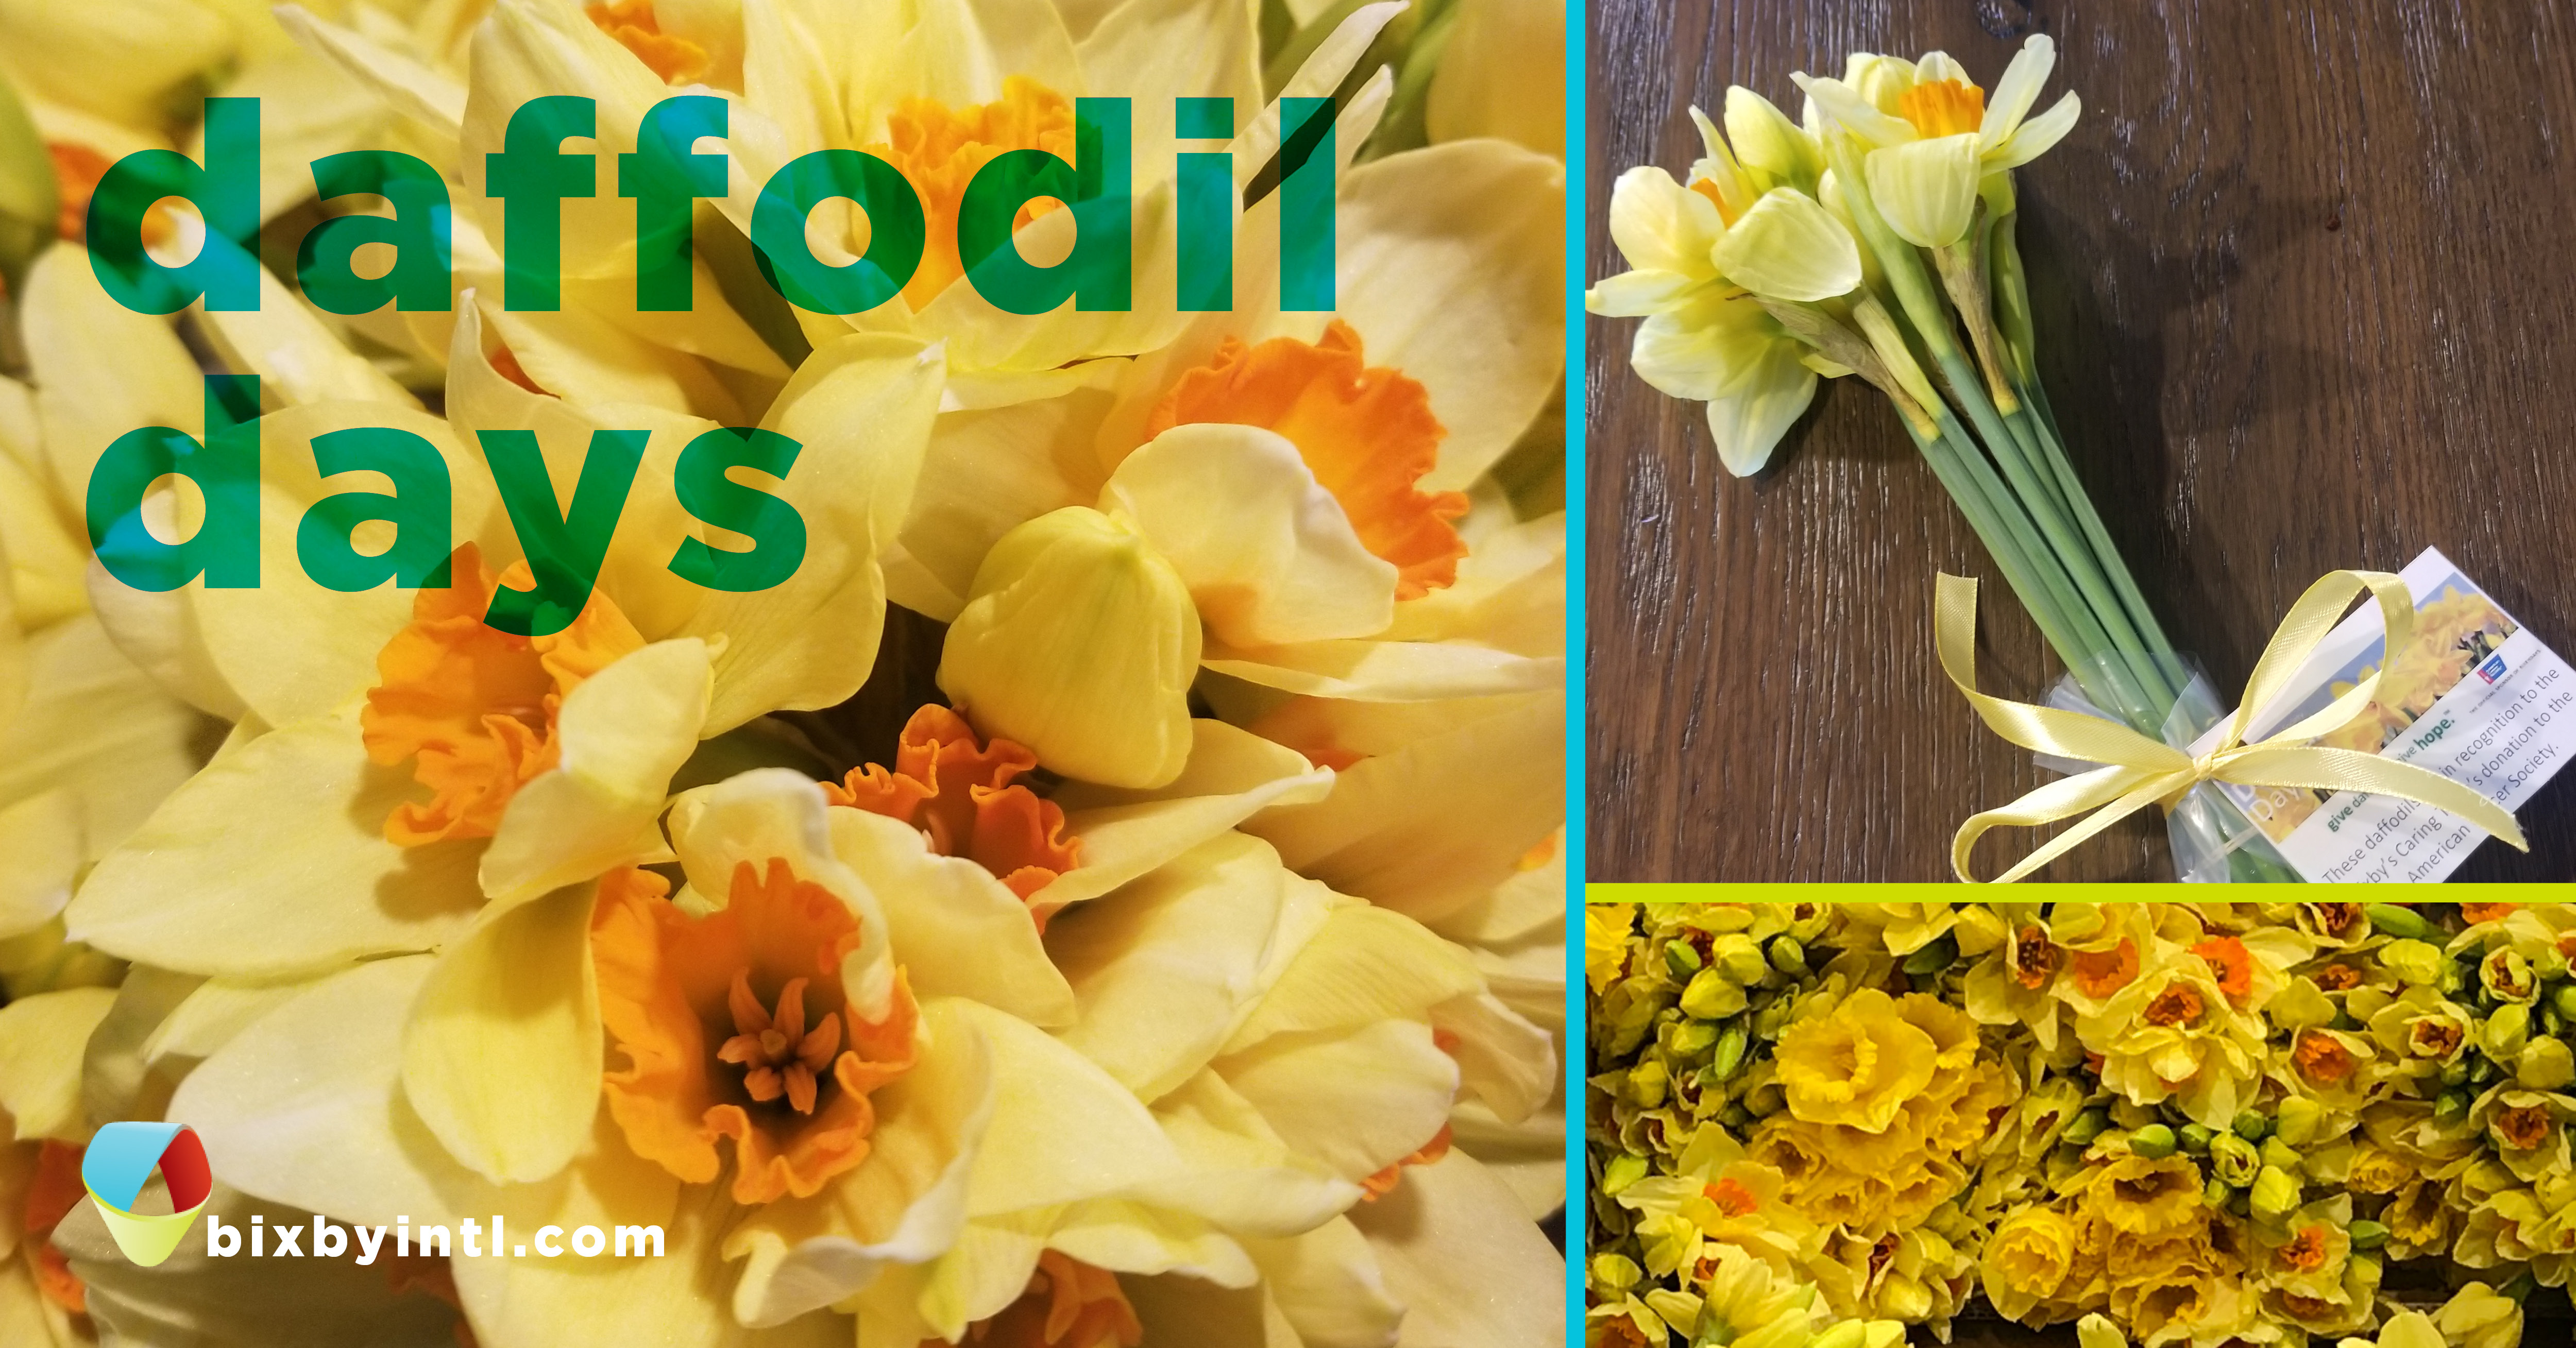 032921-Daffodil Days